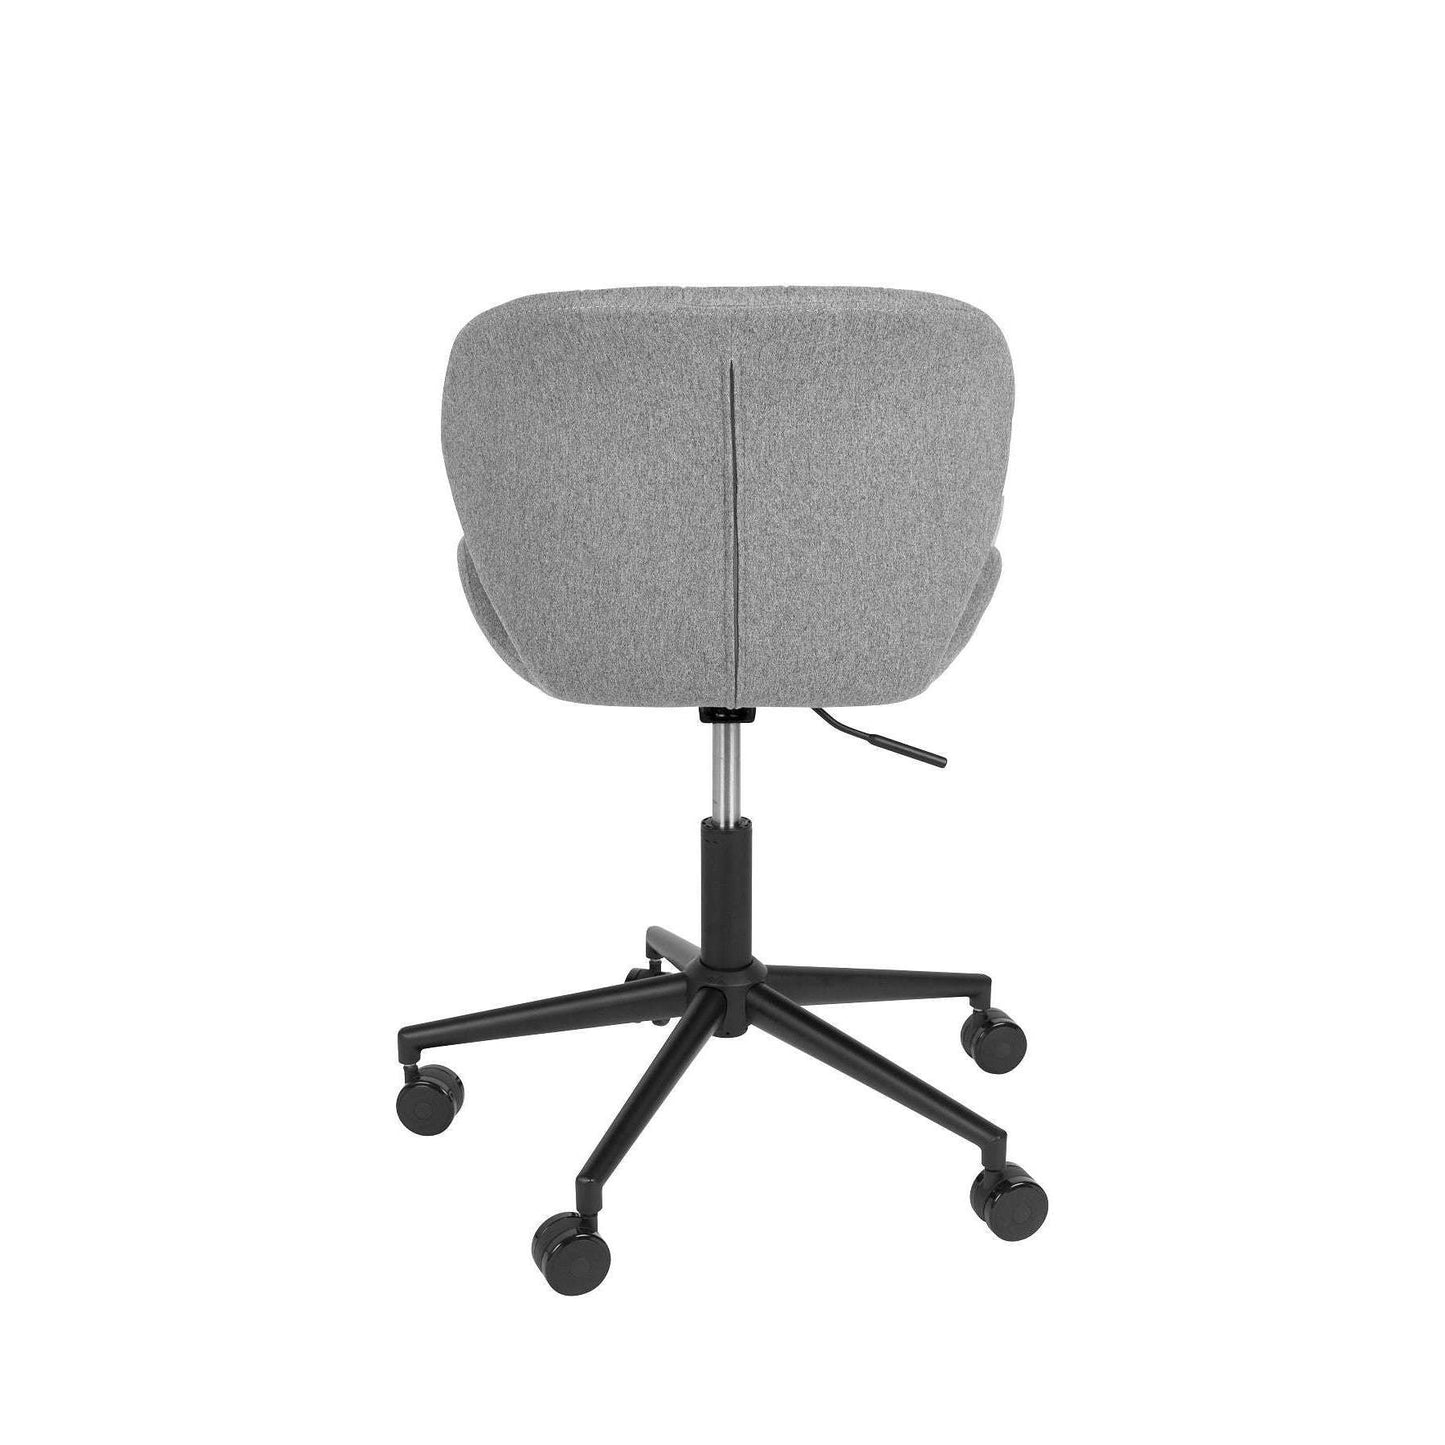 Zuiver bureaustoel omg zwart/grijs Ø65 x 76 / 88 cm